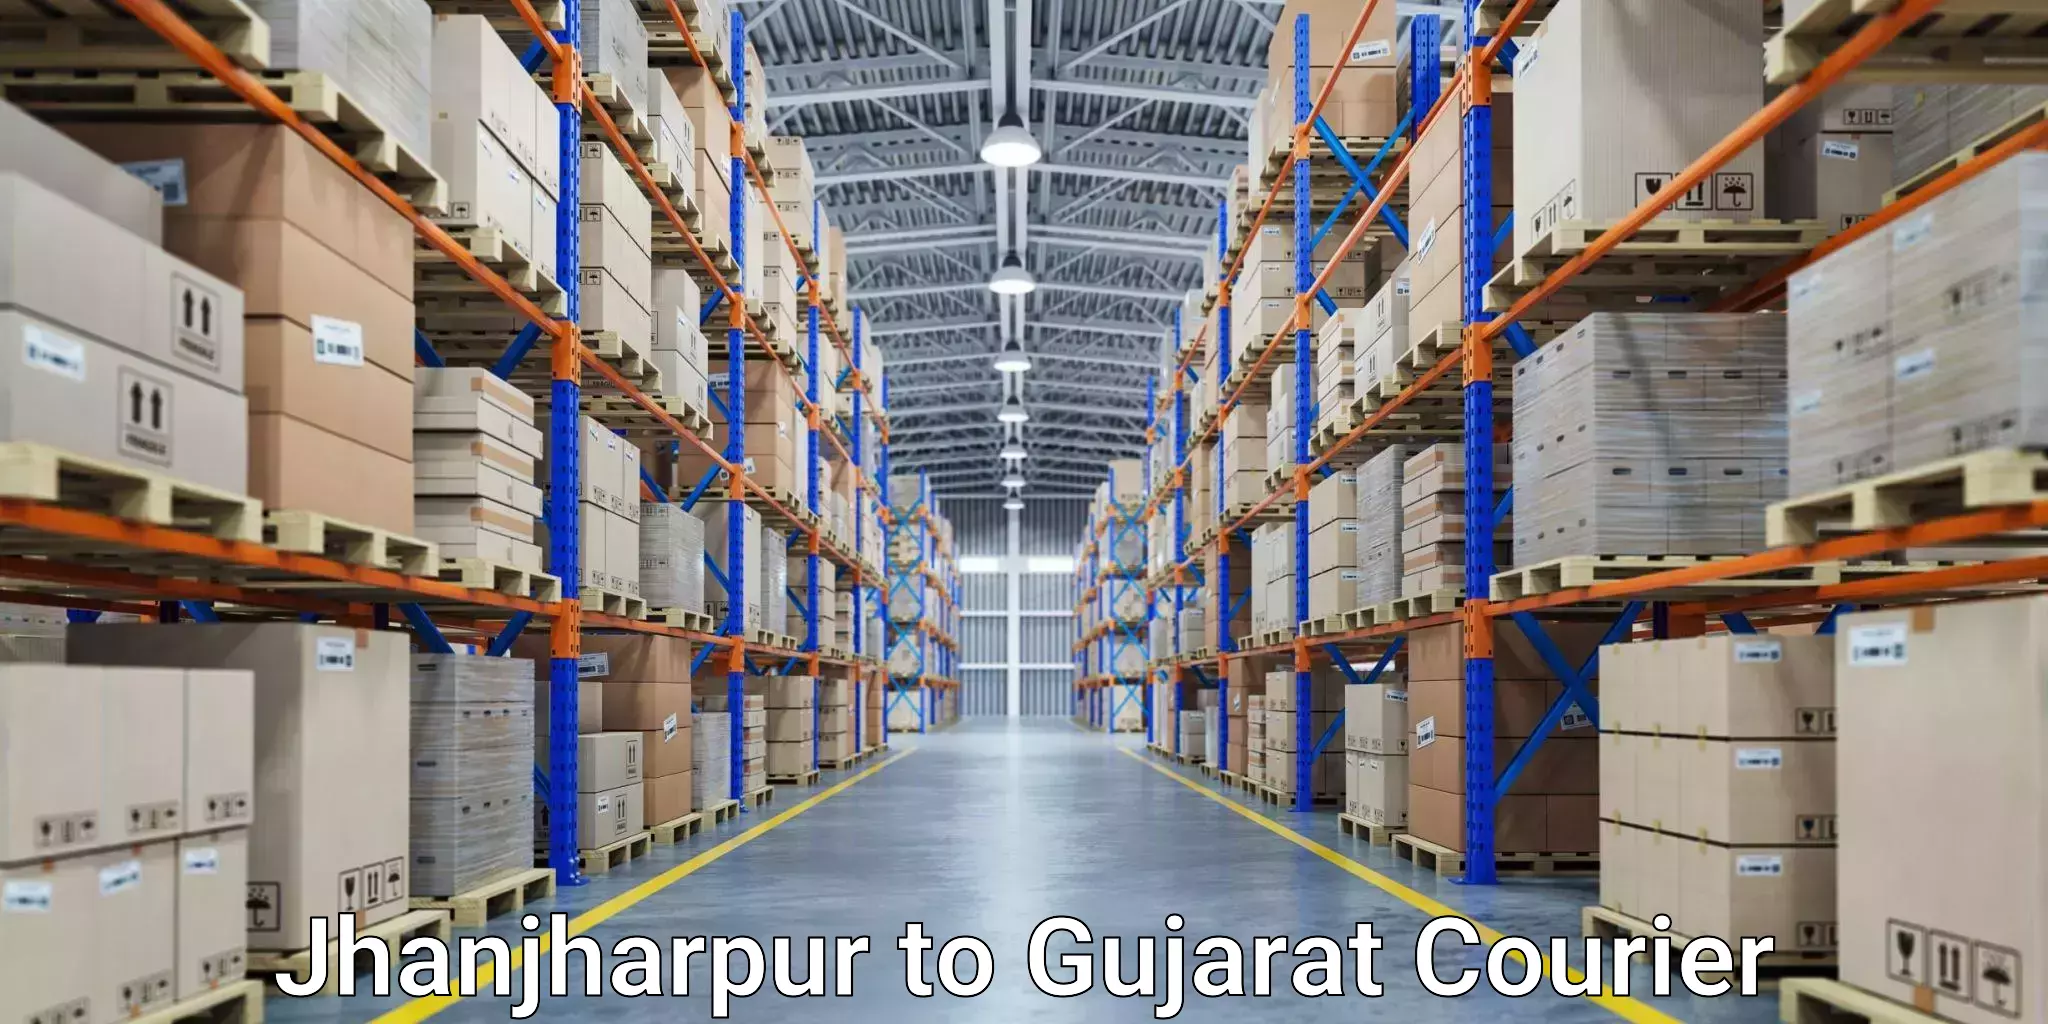 Courier service comparison Jhanjharpur to Rapar